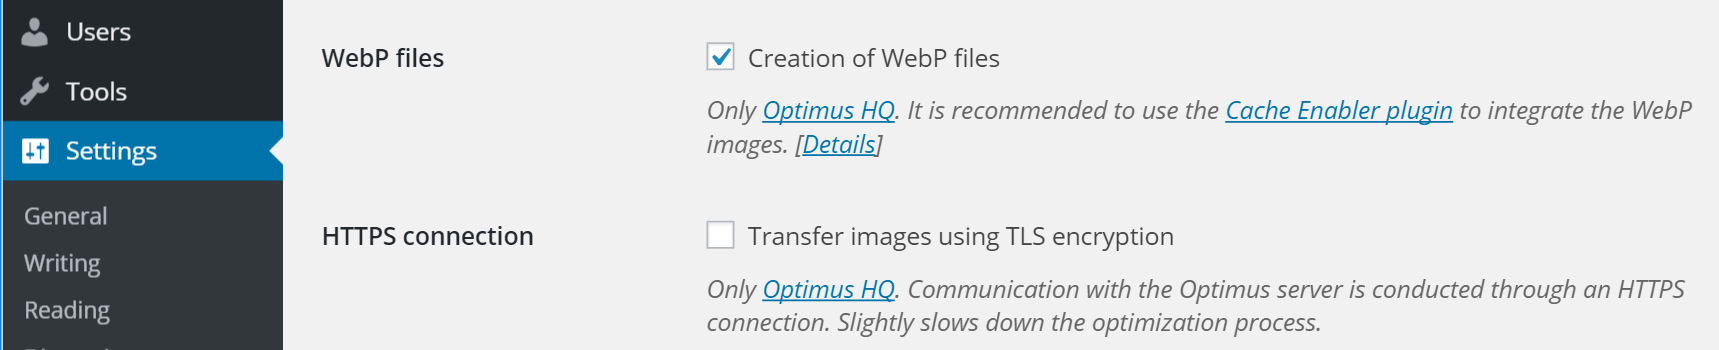 création de fichiers webp